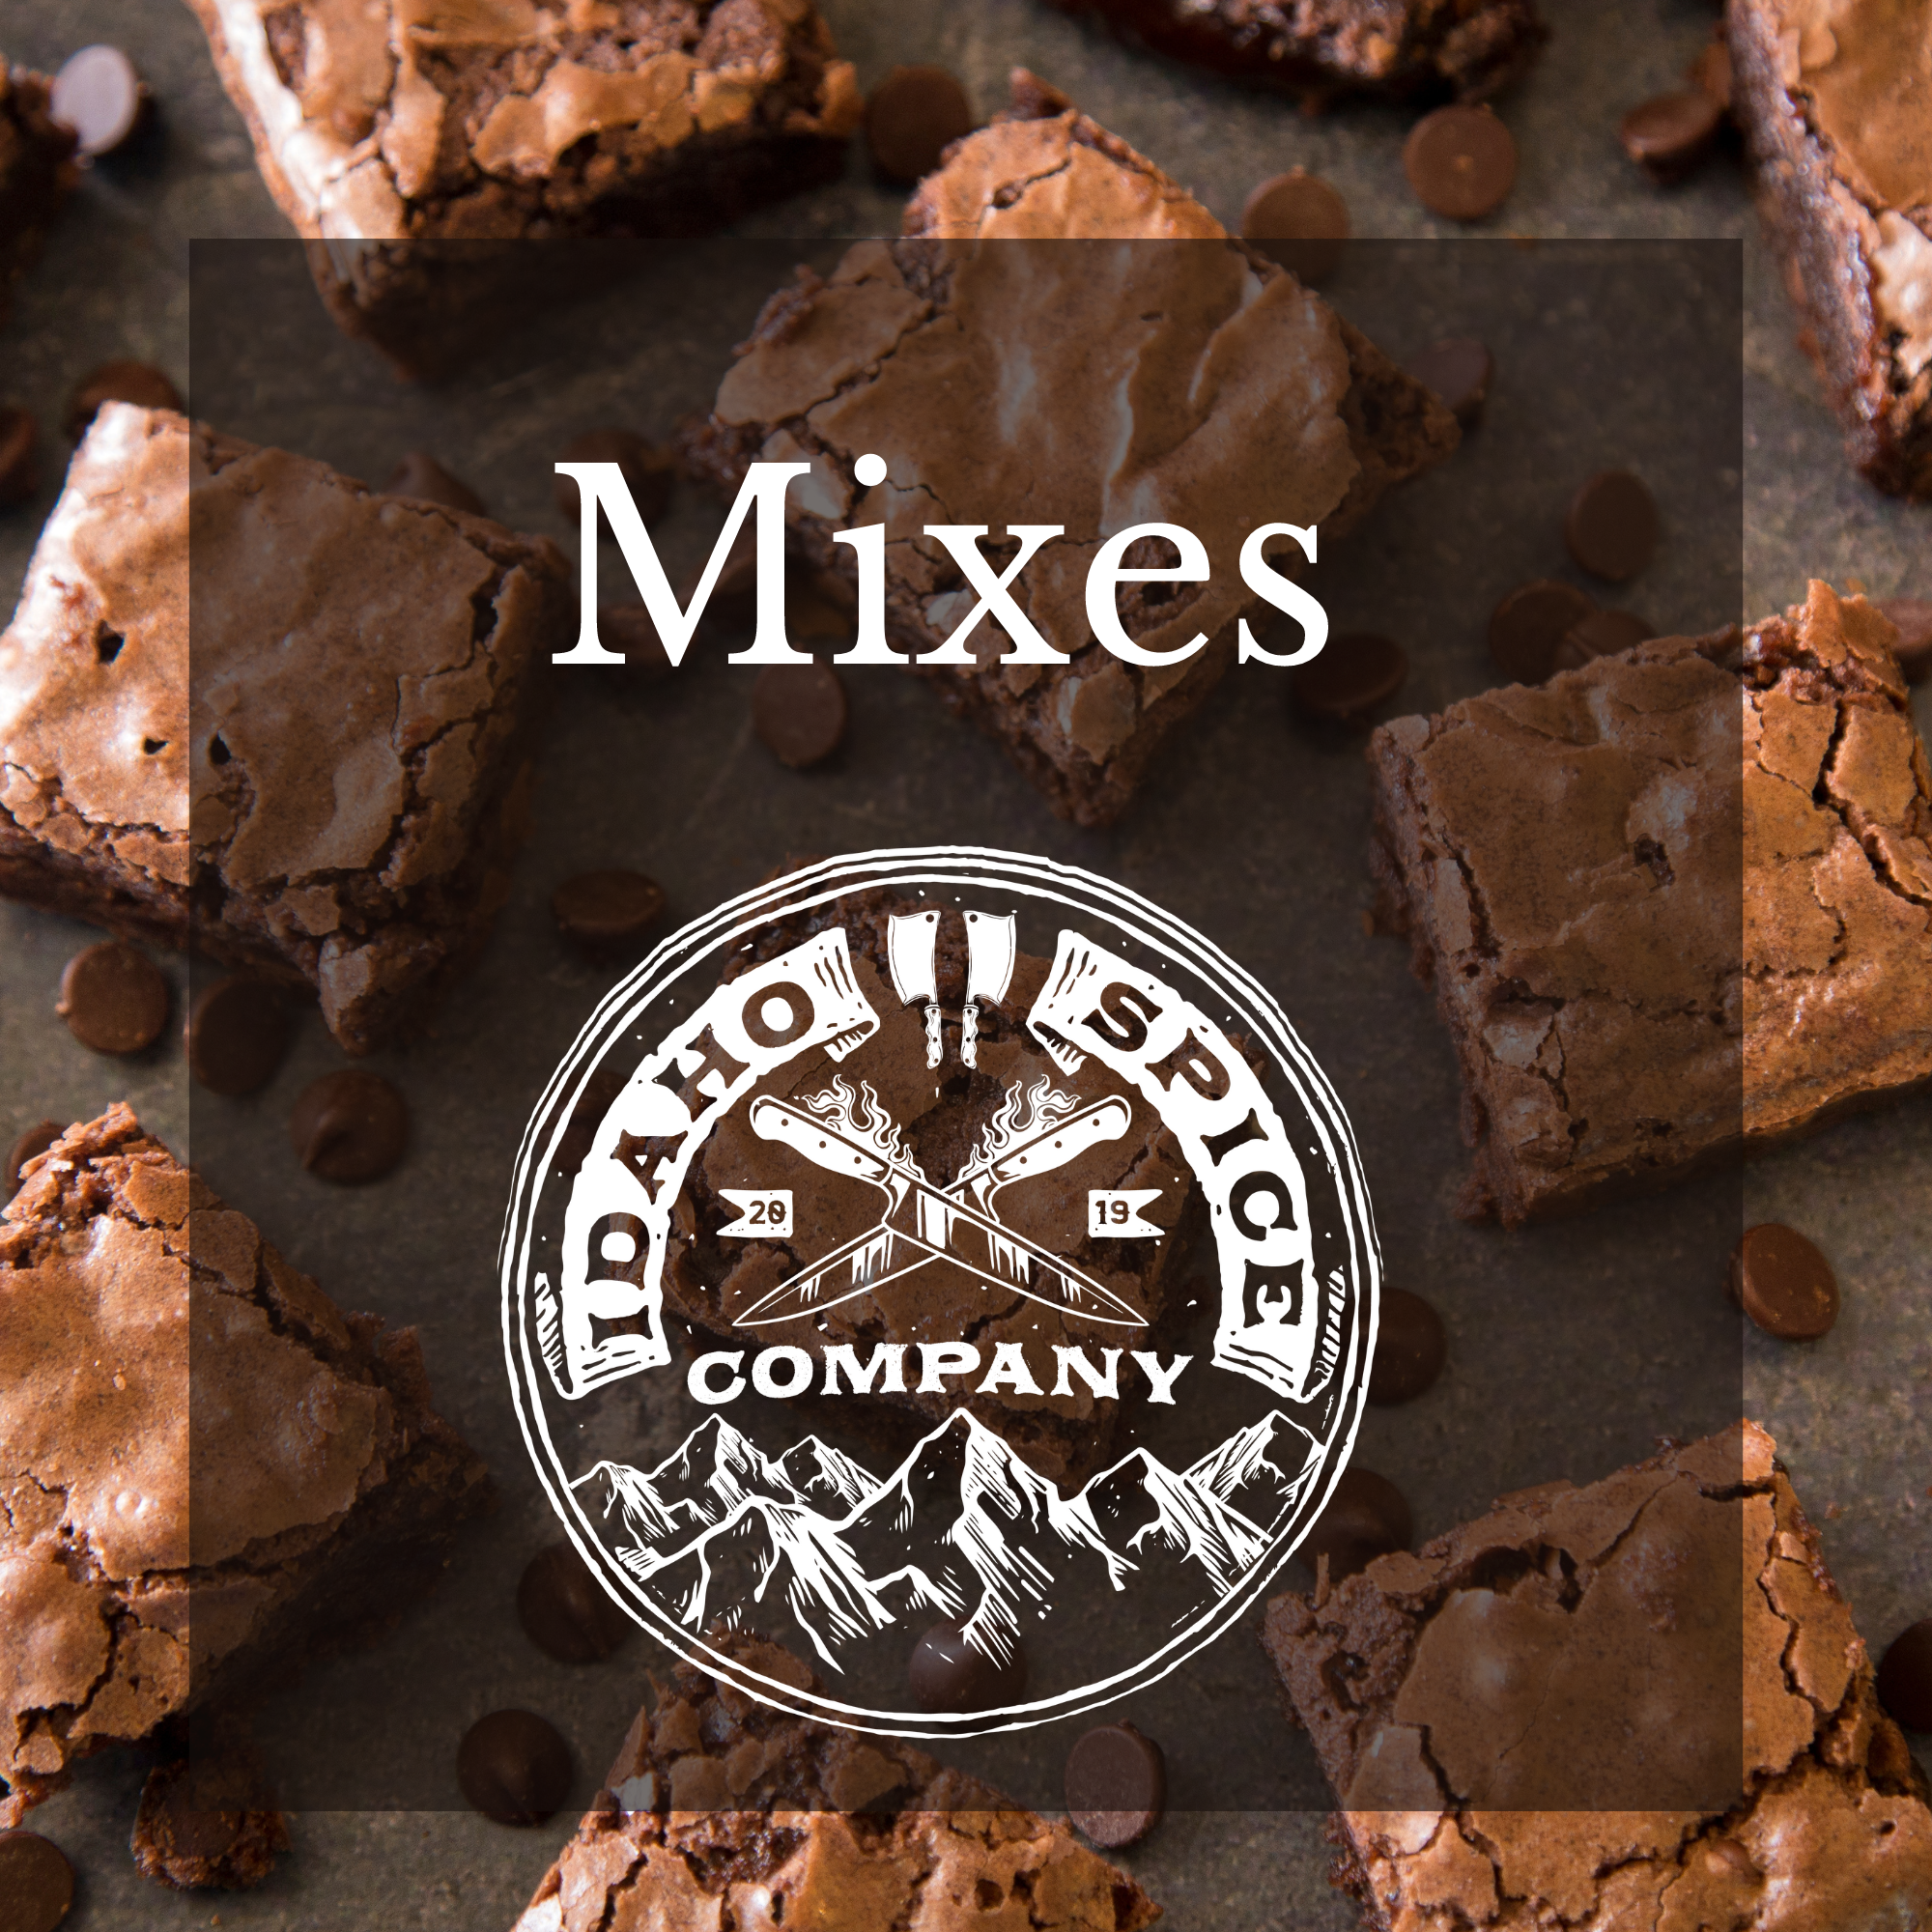 Mixes – Idaho Spice Company